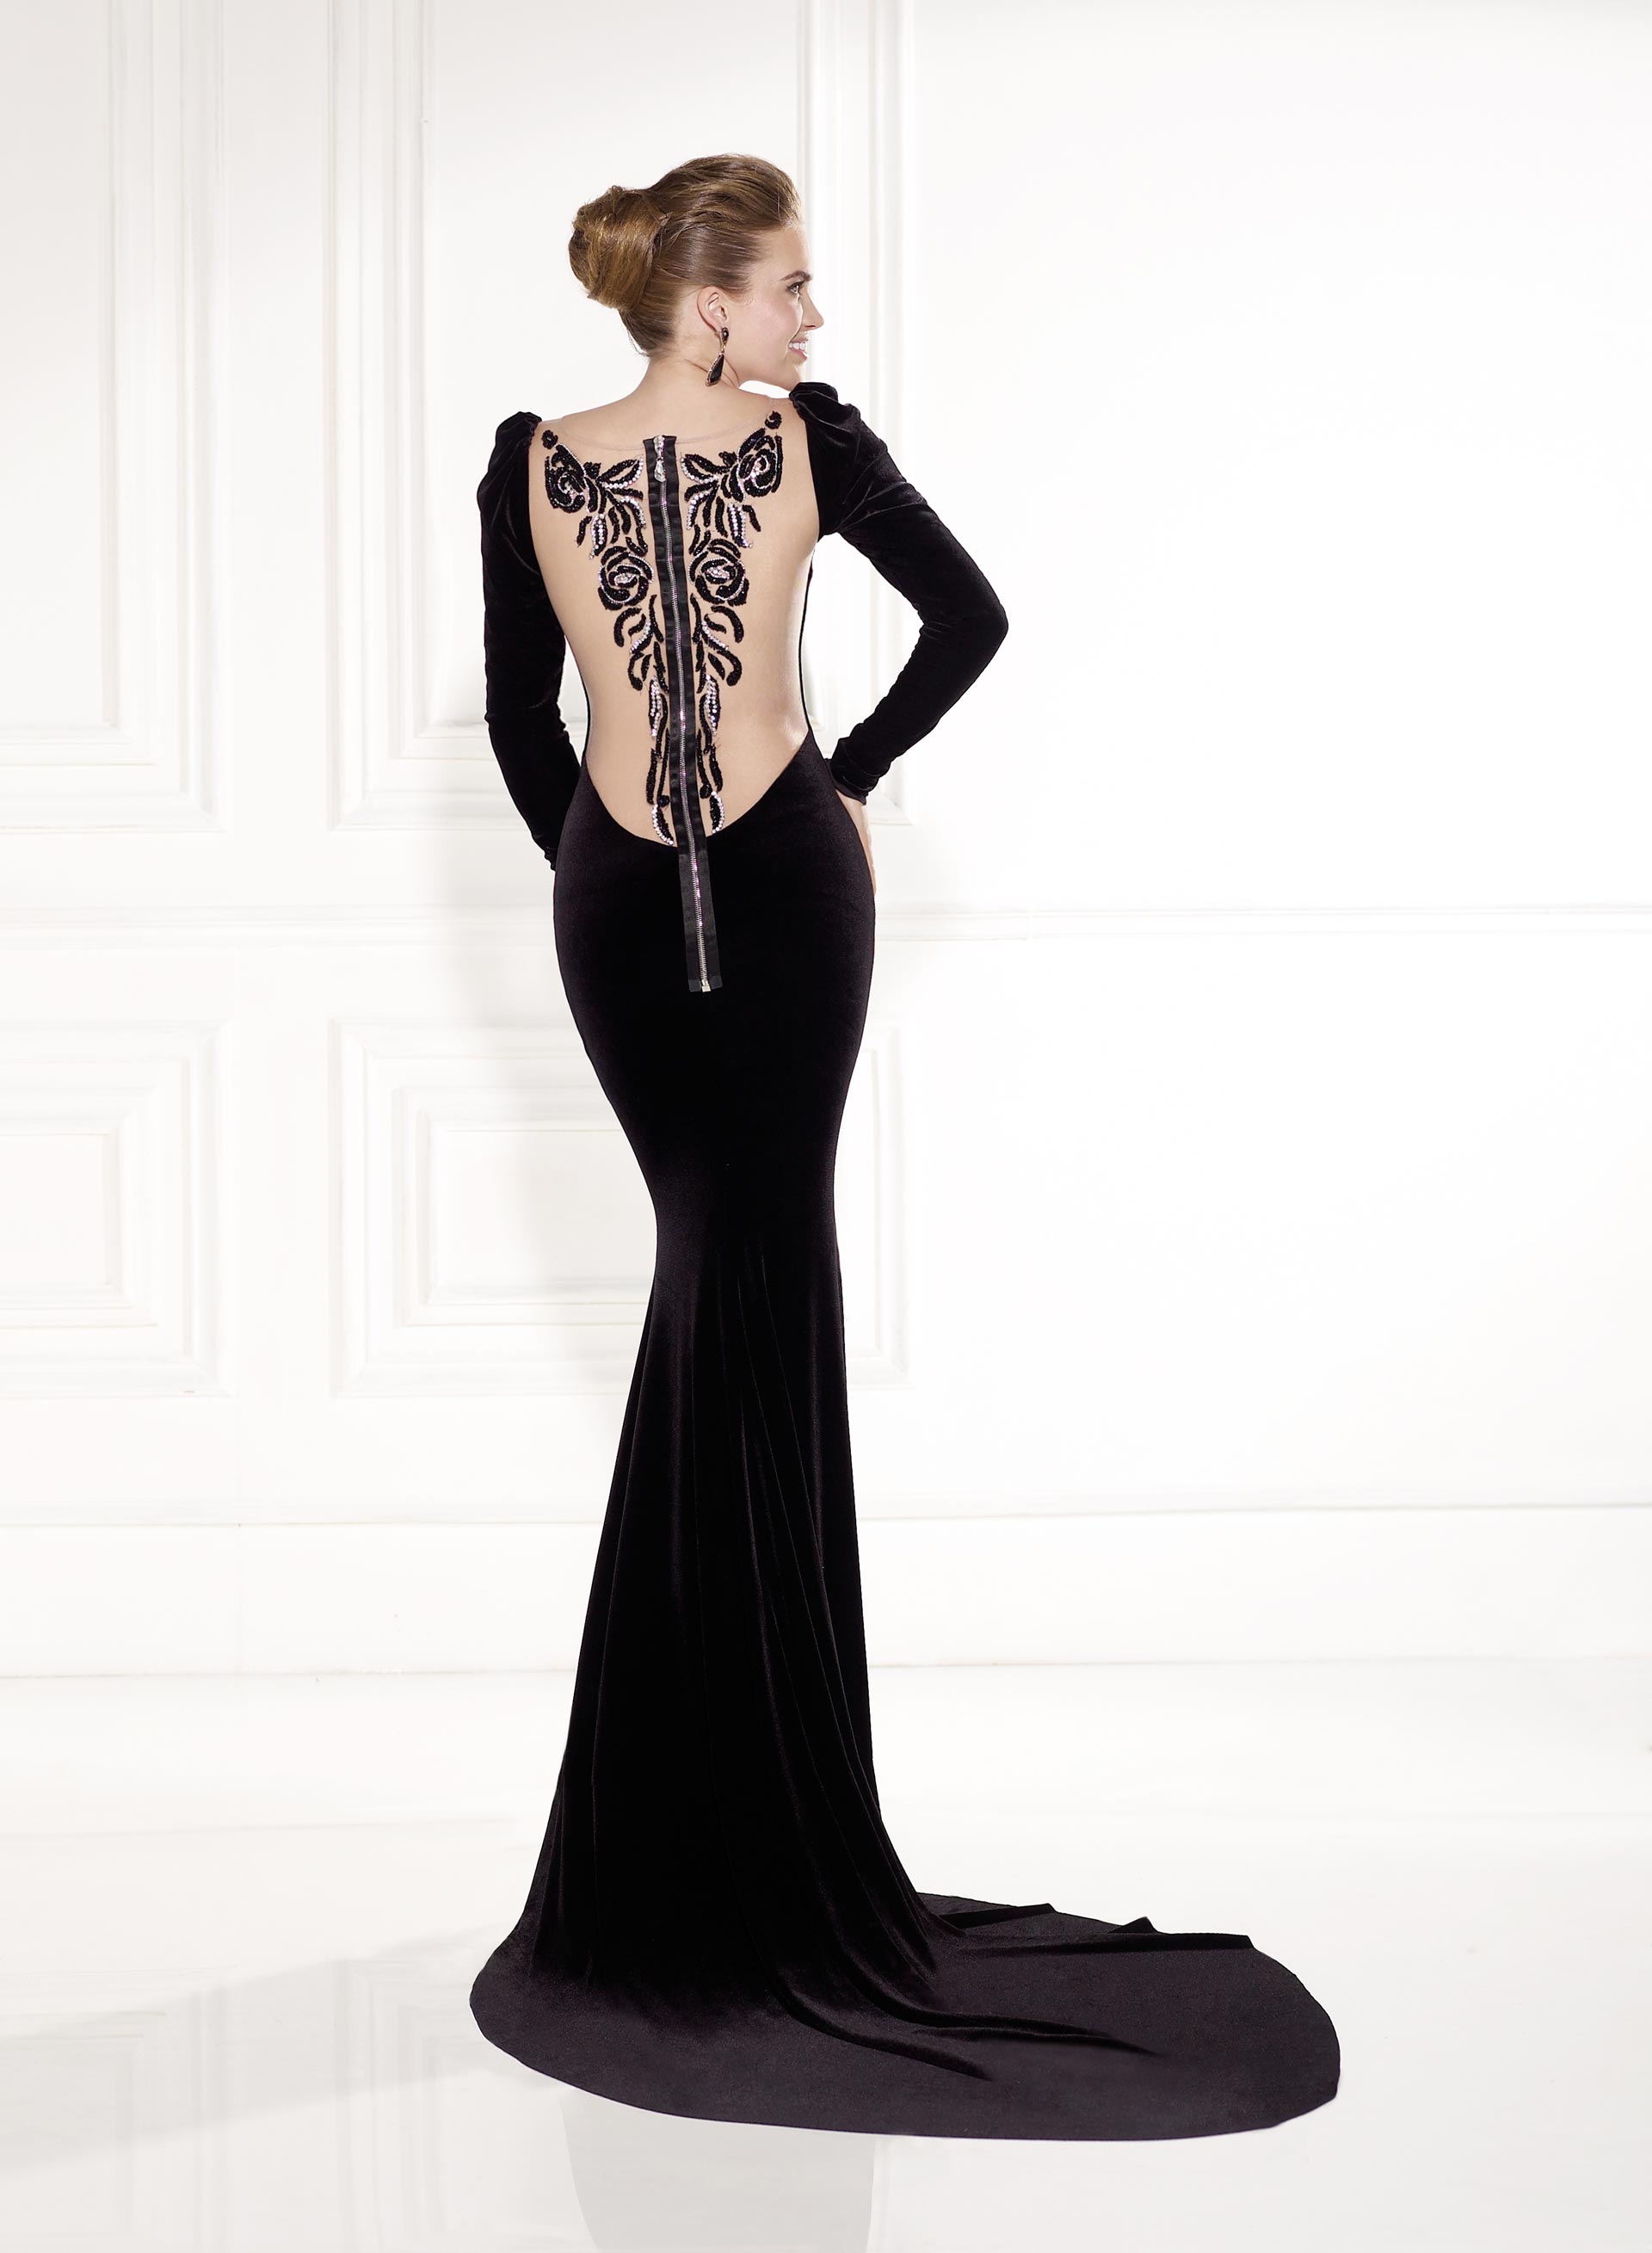 Evening Dresses by Turkish Designer Tarik Ediz